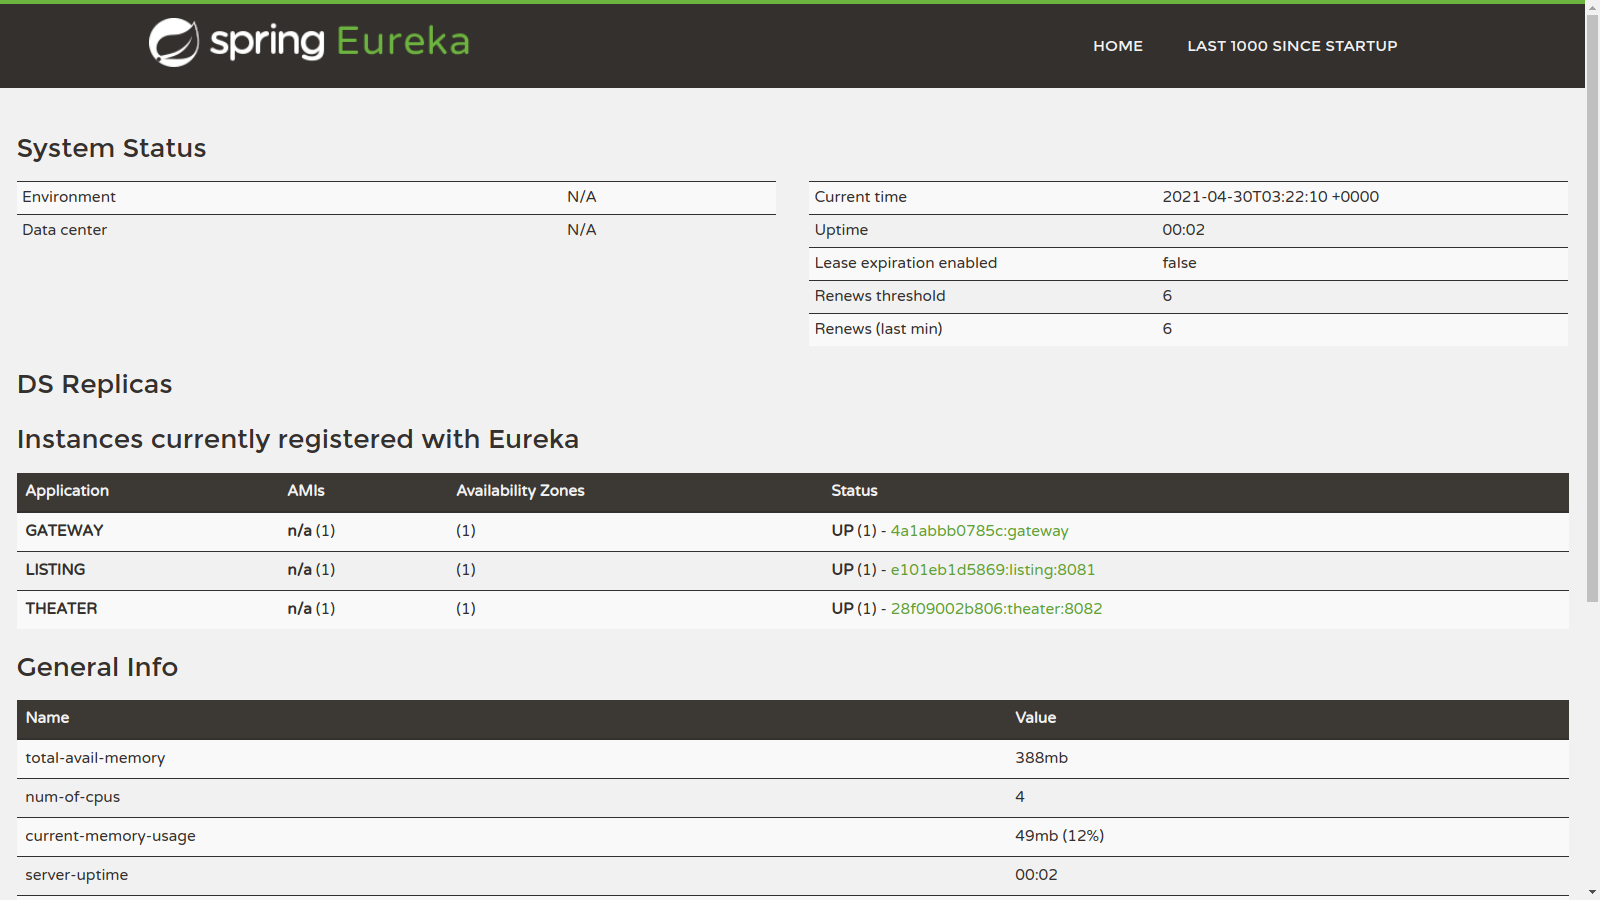 Eureka Instances Registered